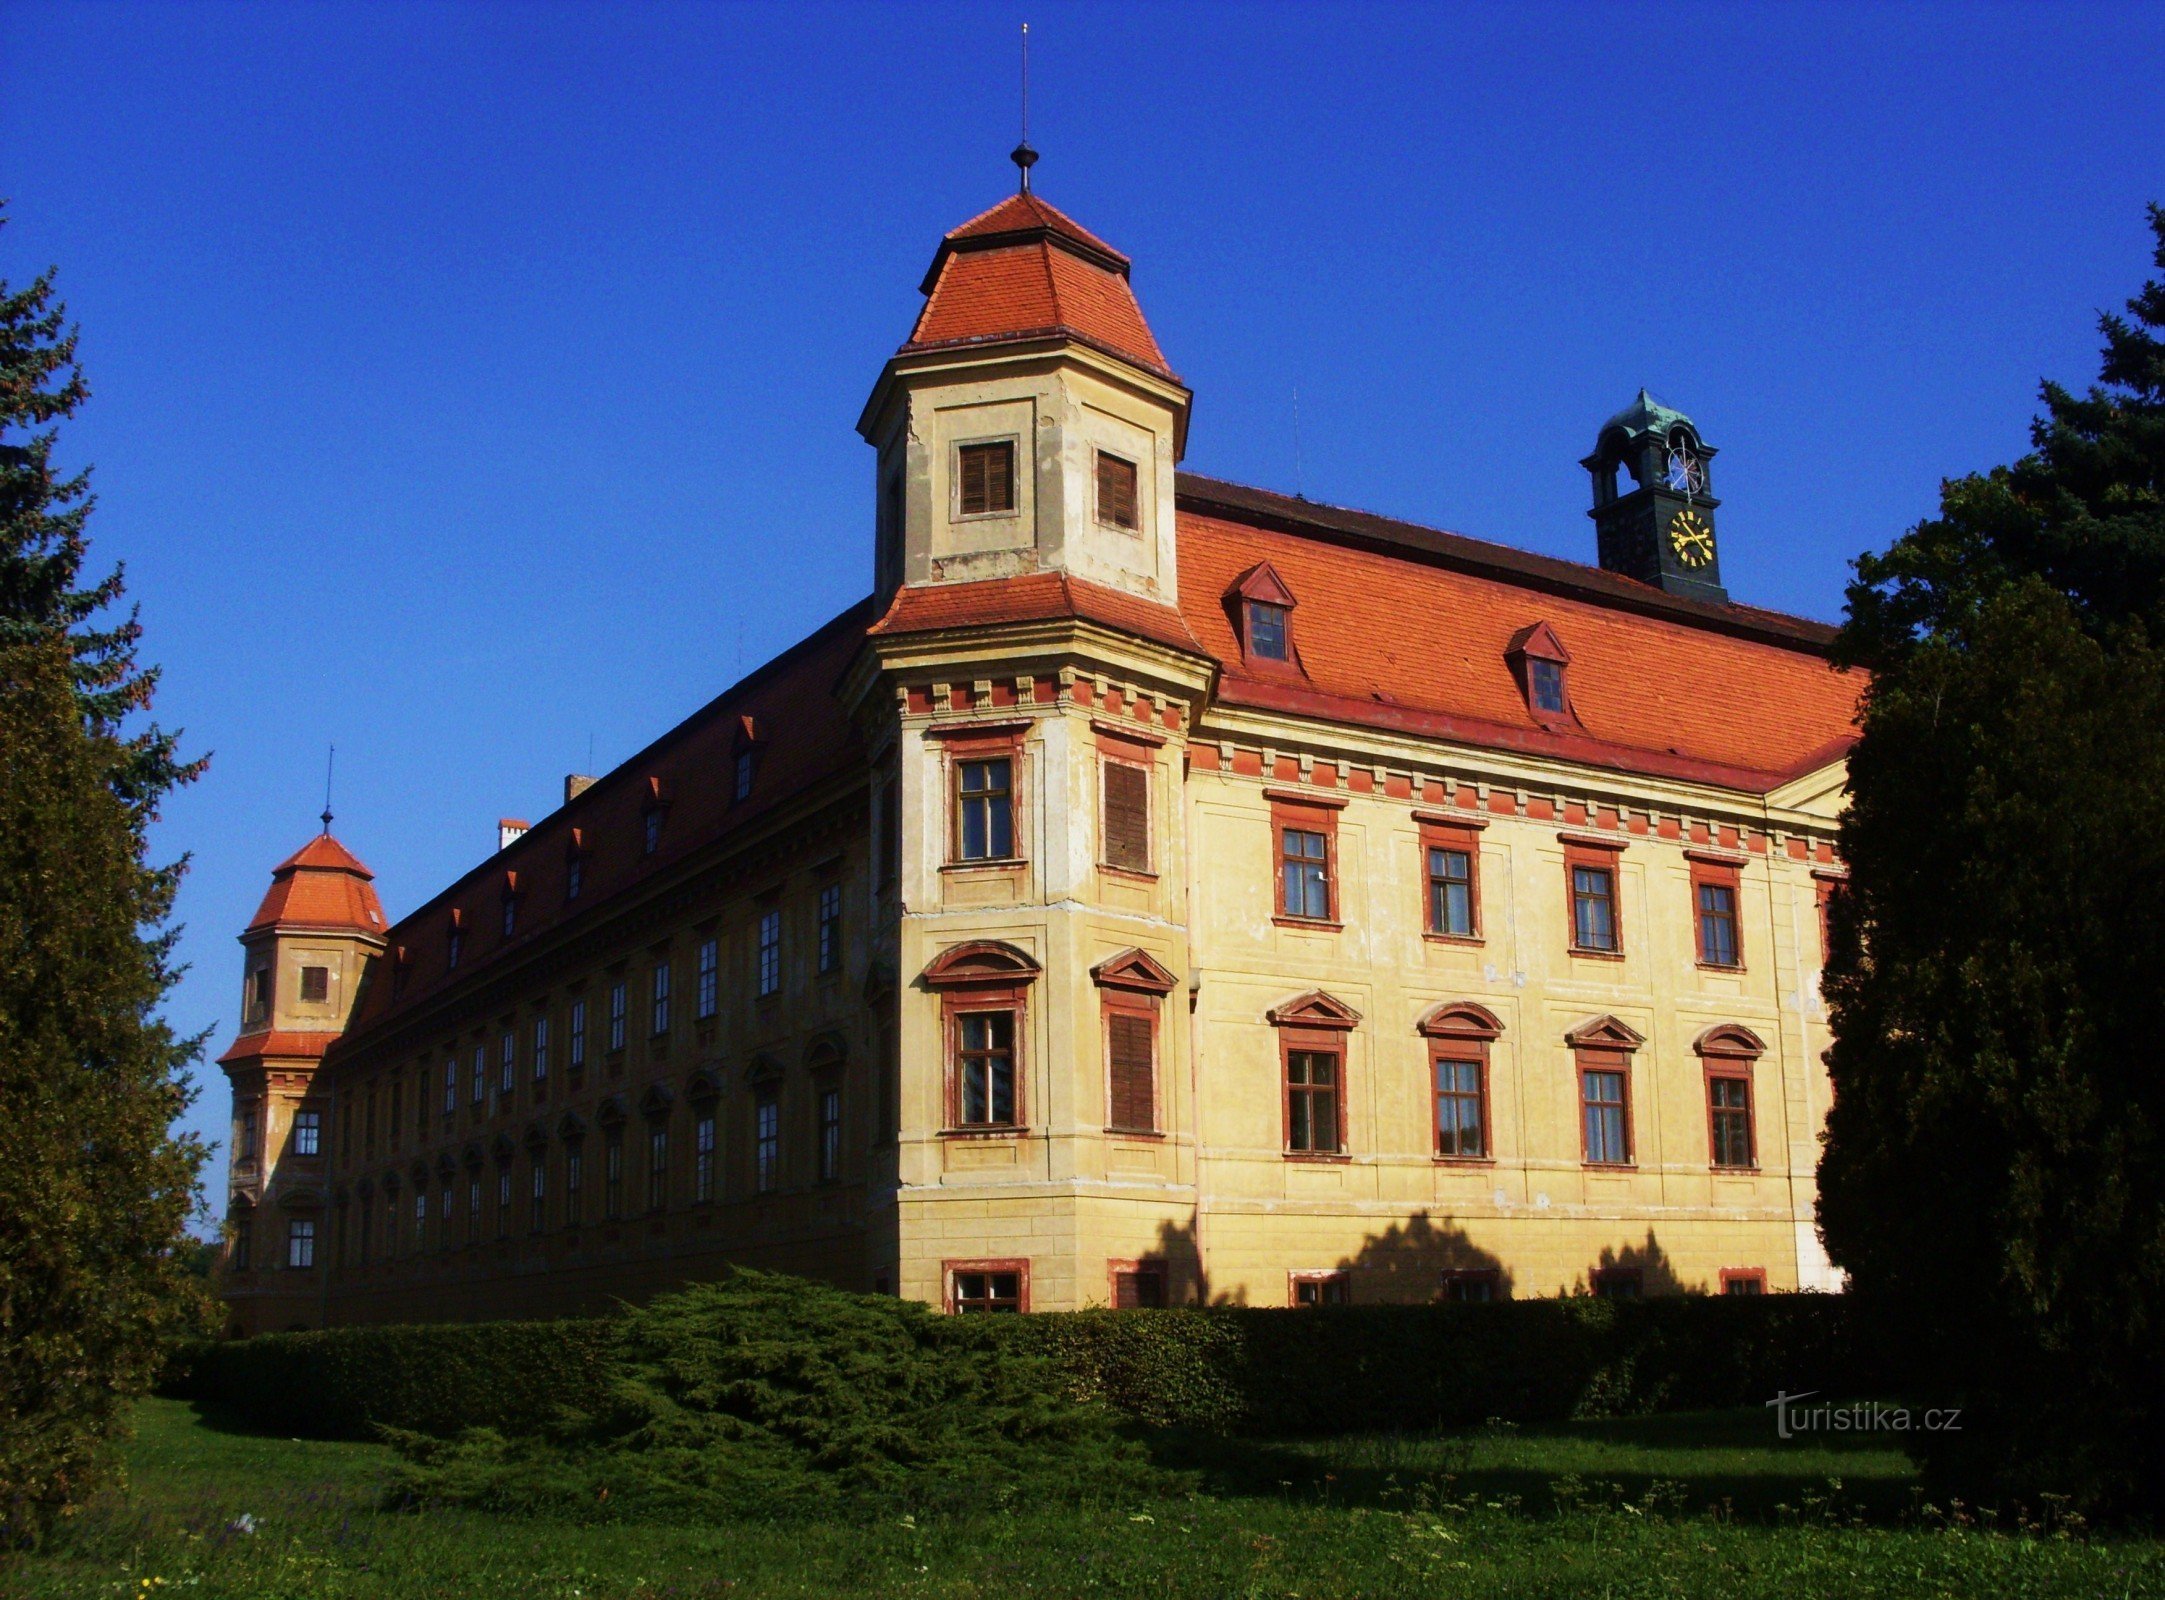 Zum Schloss in Holešov